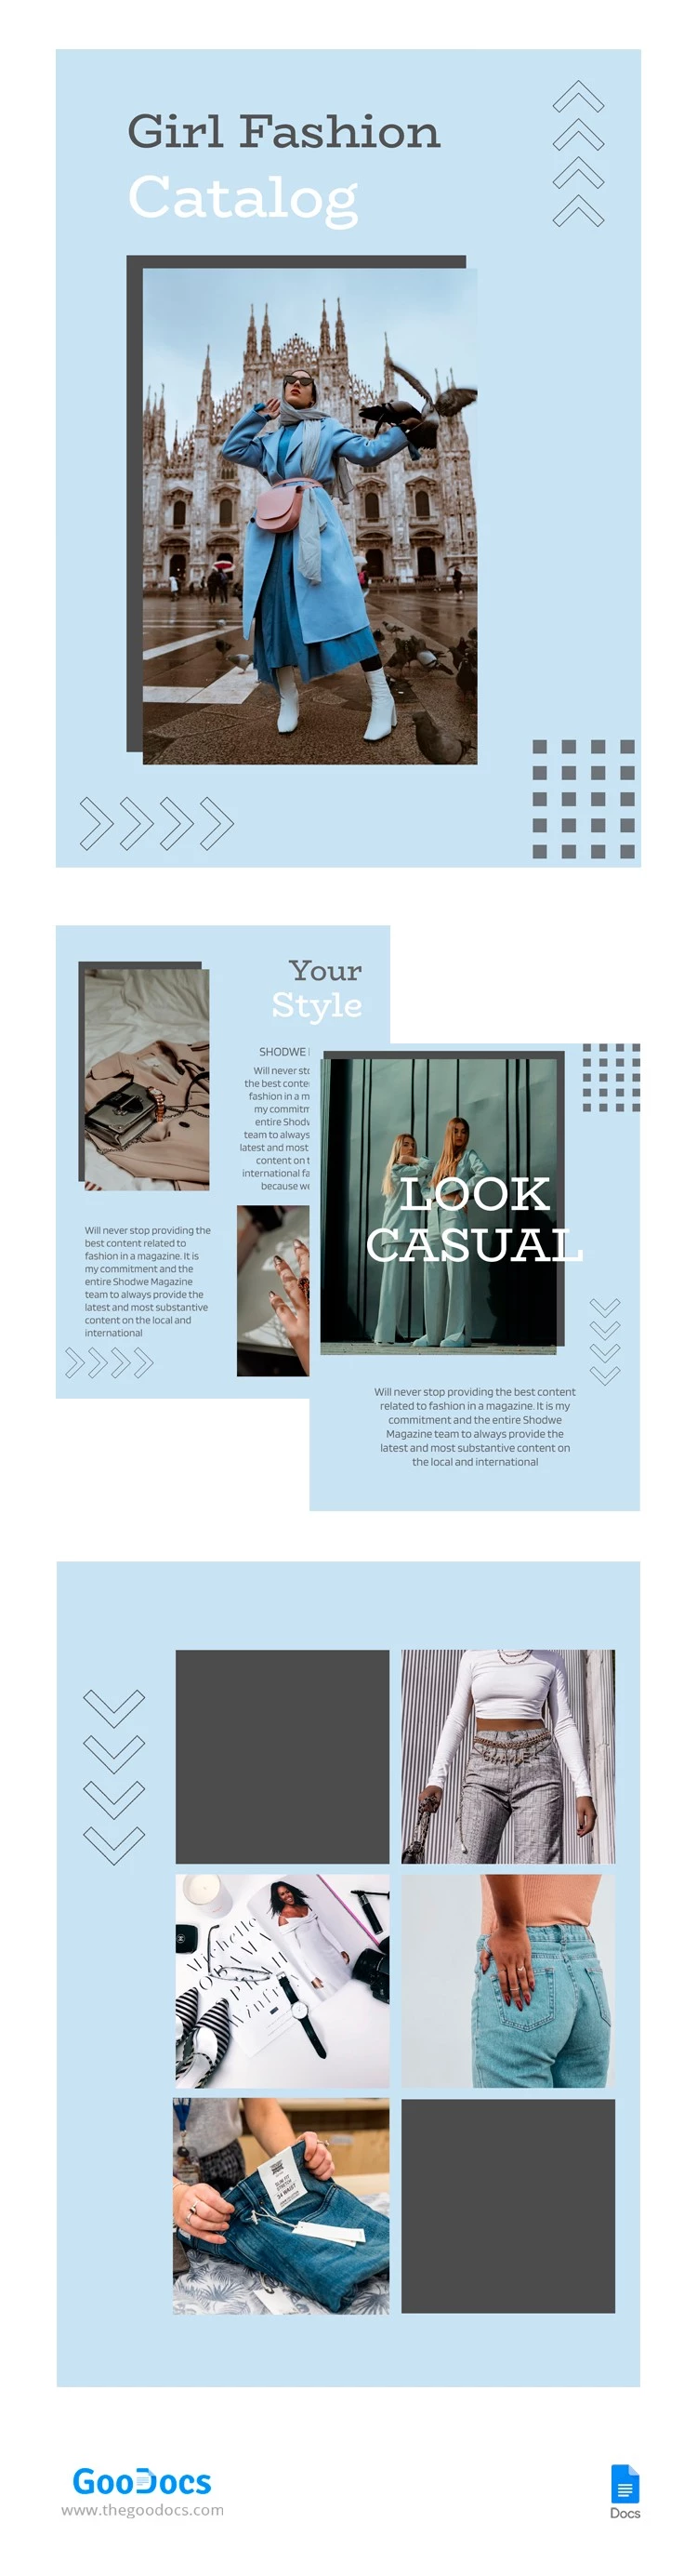 Catálogo de moda para chicas. - free Google Docs Template - 10064565